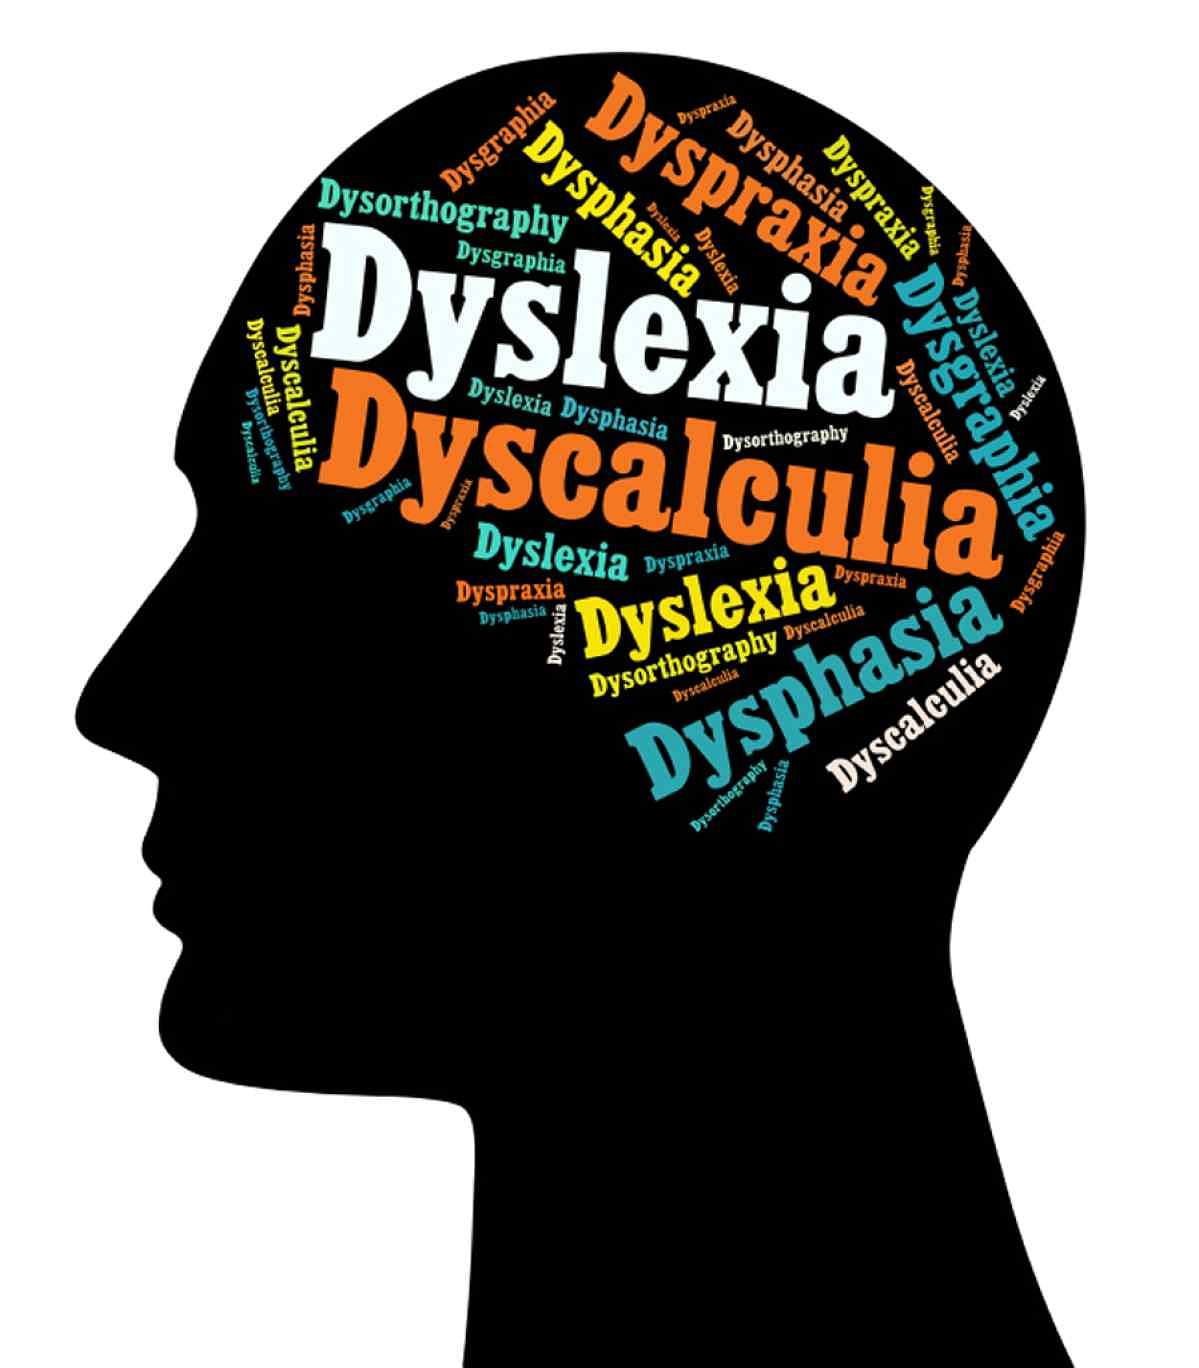 डिस्लेक्सिया के लक्षण की पहचान करना आसान नहीं है.